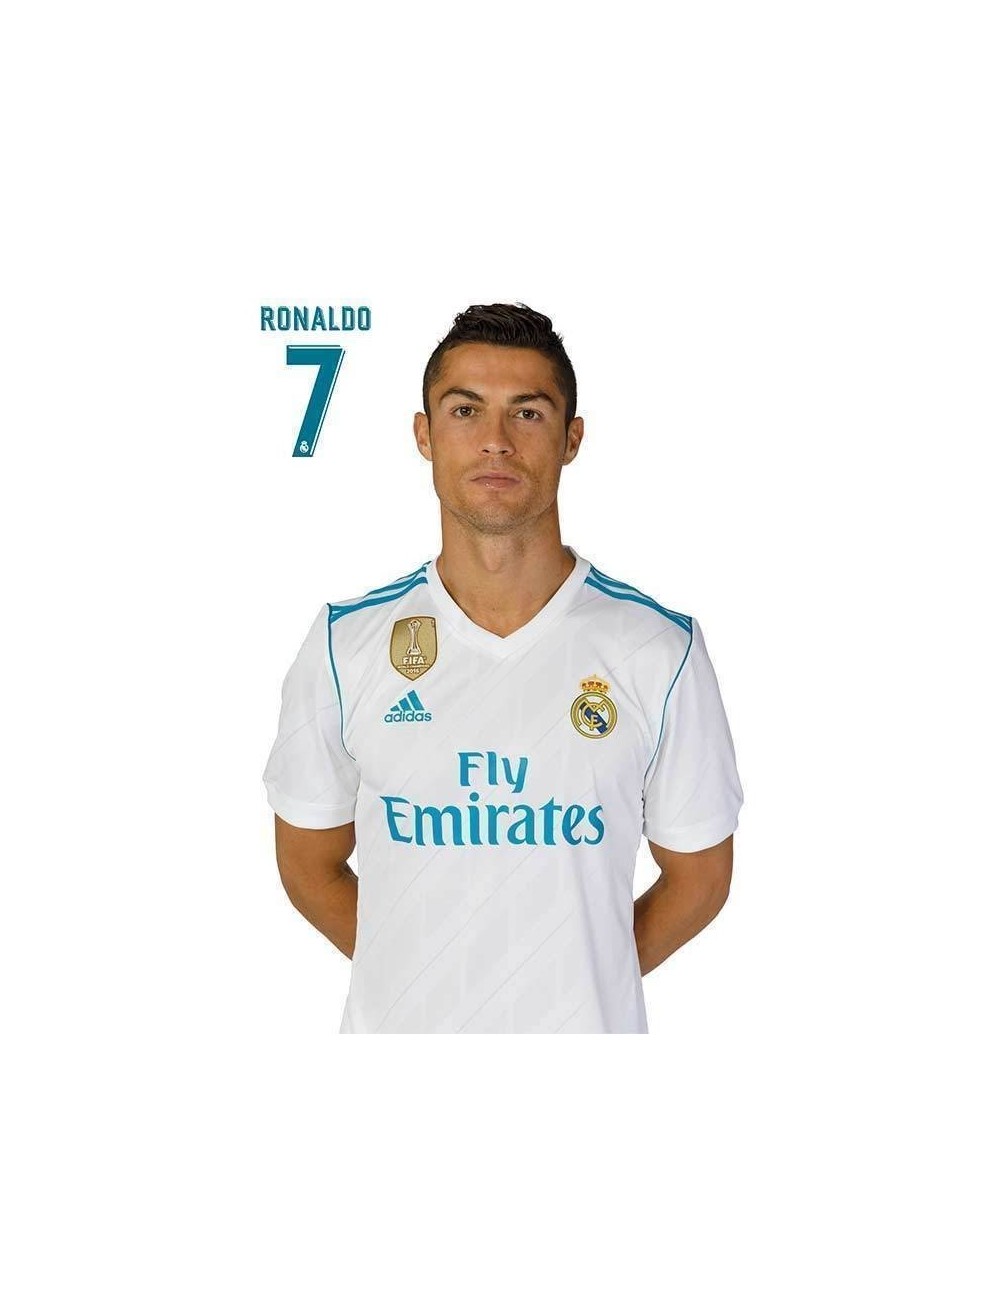 Carte postala Cristiano Ronaldo, 10 x 15 cm